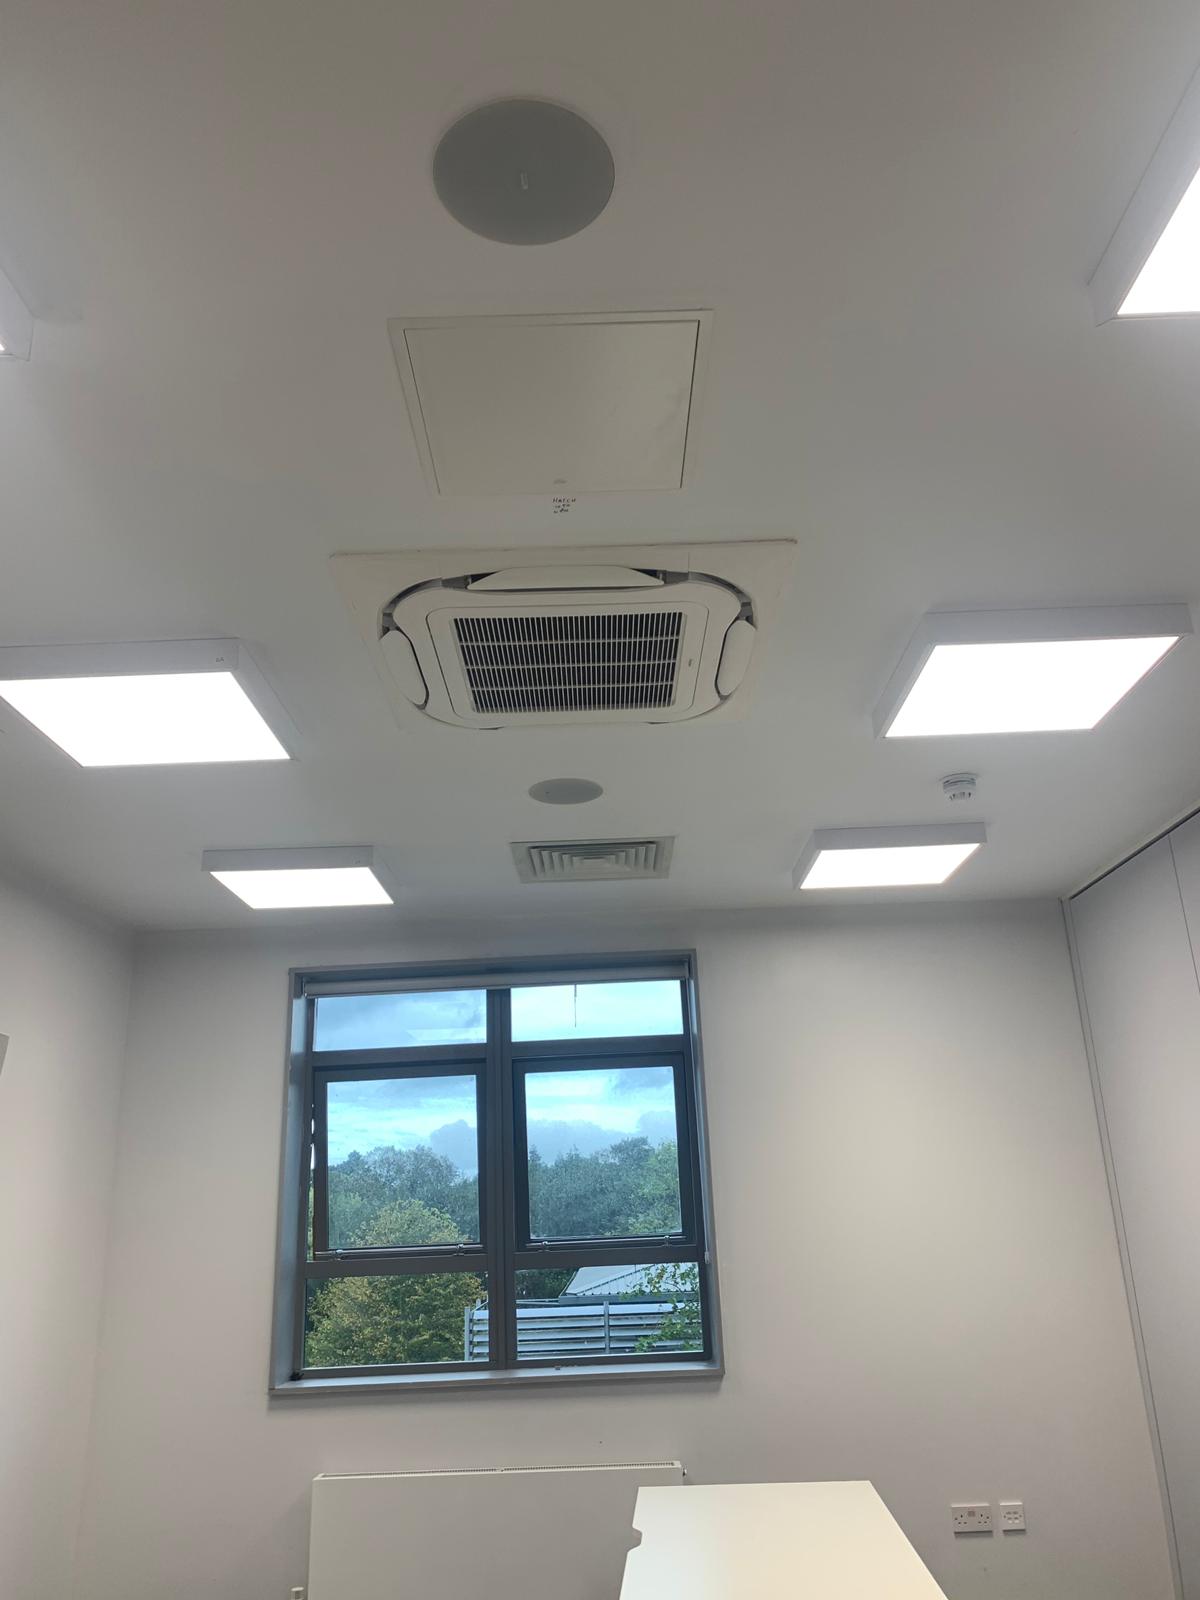 Daikin VRV Installation - Edge Hill Medical School - Aerocool Ltd - Air Conditioning - Refrigeration - HVAC